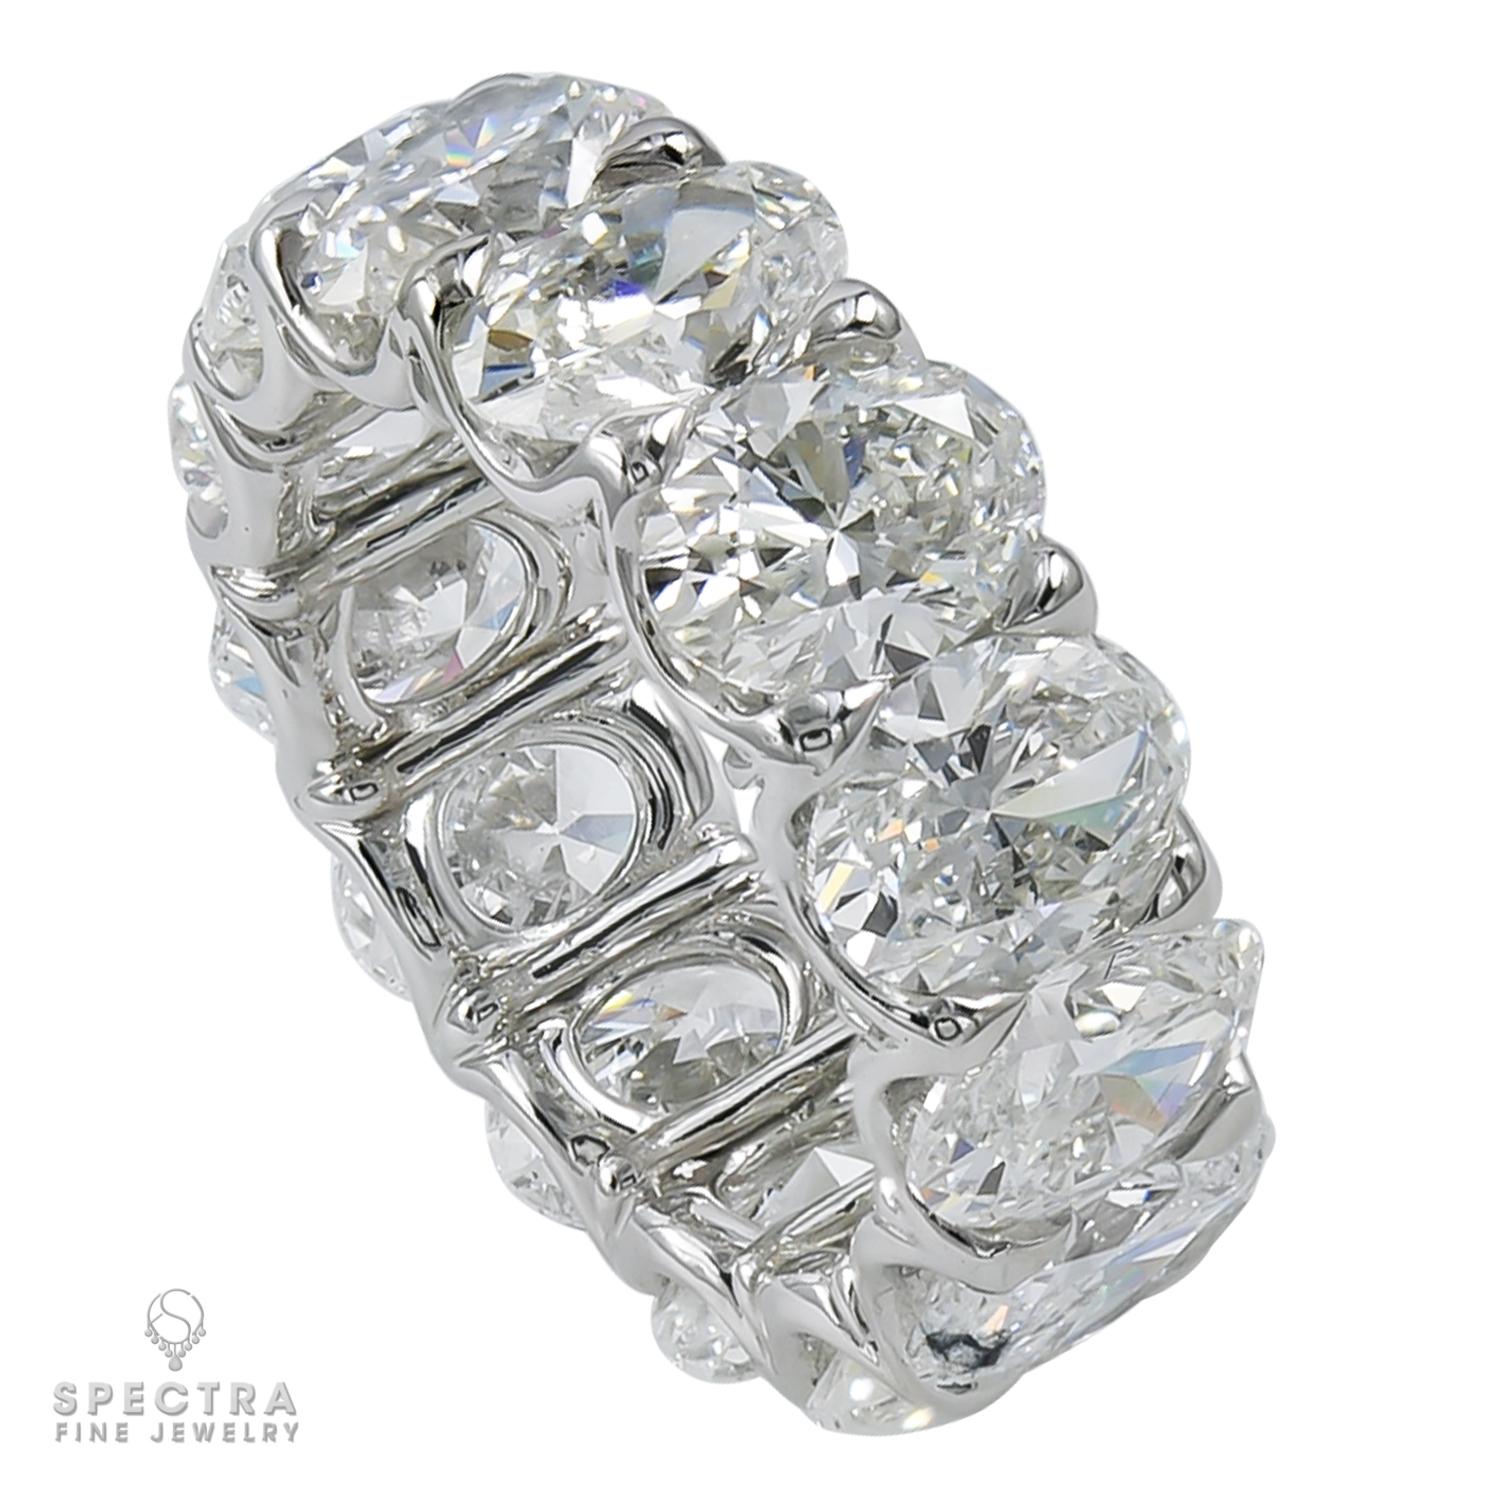 Bague d'éternité/de mariage de grande classe comprenant 13 diamants ovales pesant au total 11,73 carats. Chaque diamant pèse 0,9 carat.
Les diamants sont certifiés par le GIA et présentent une couleur D-E-F et une pureté VVS-VS.
Le métal est de l'or